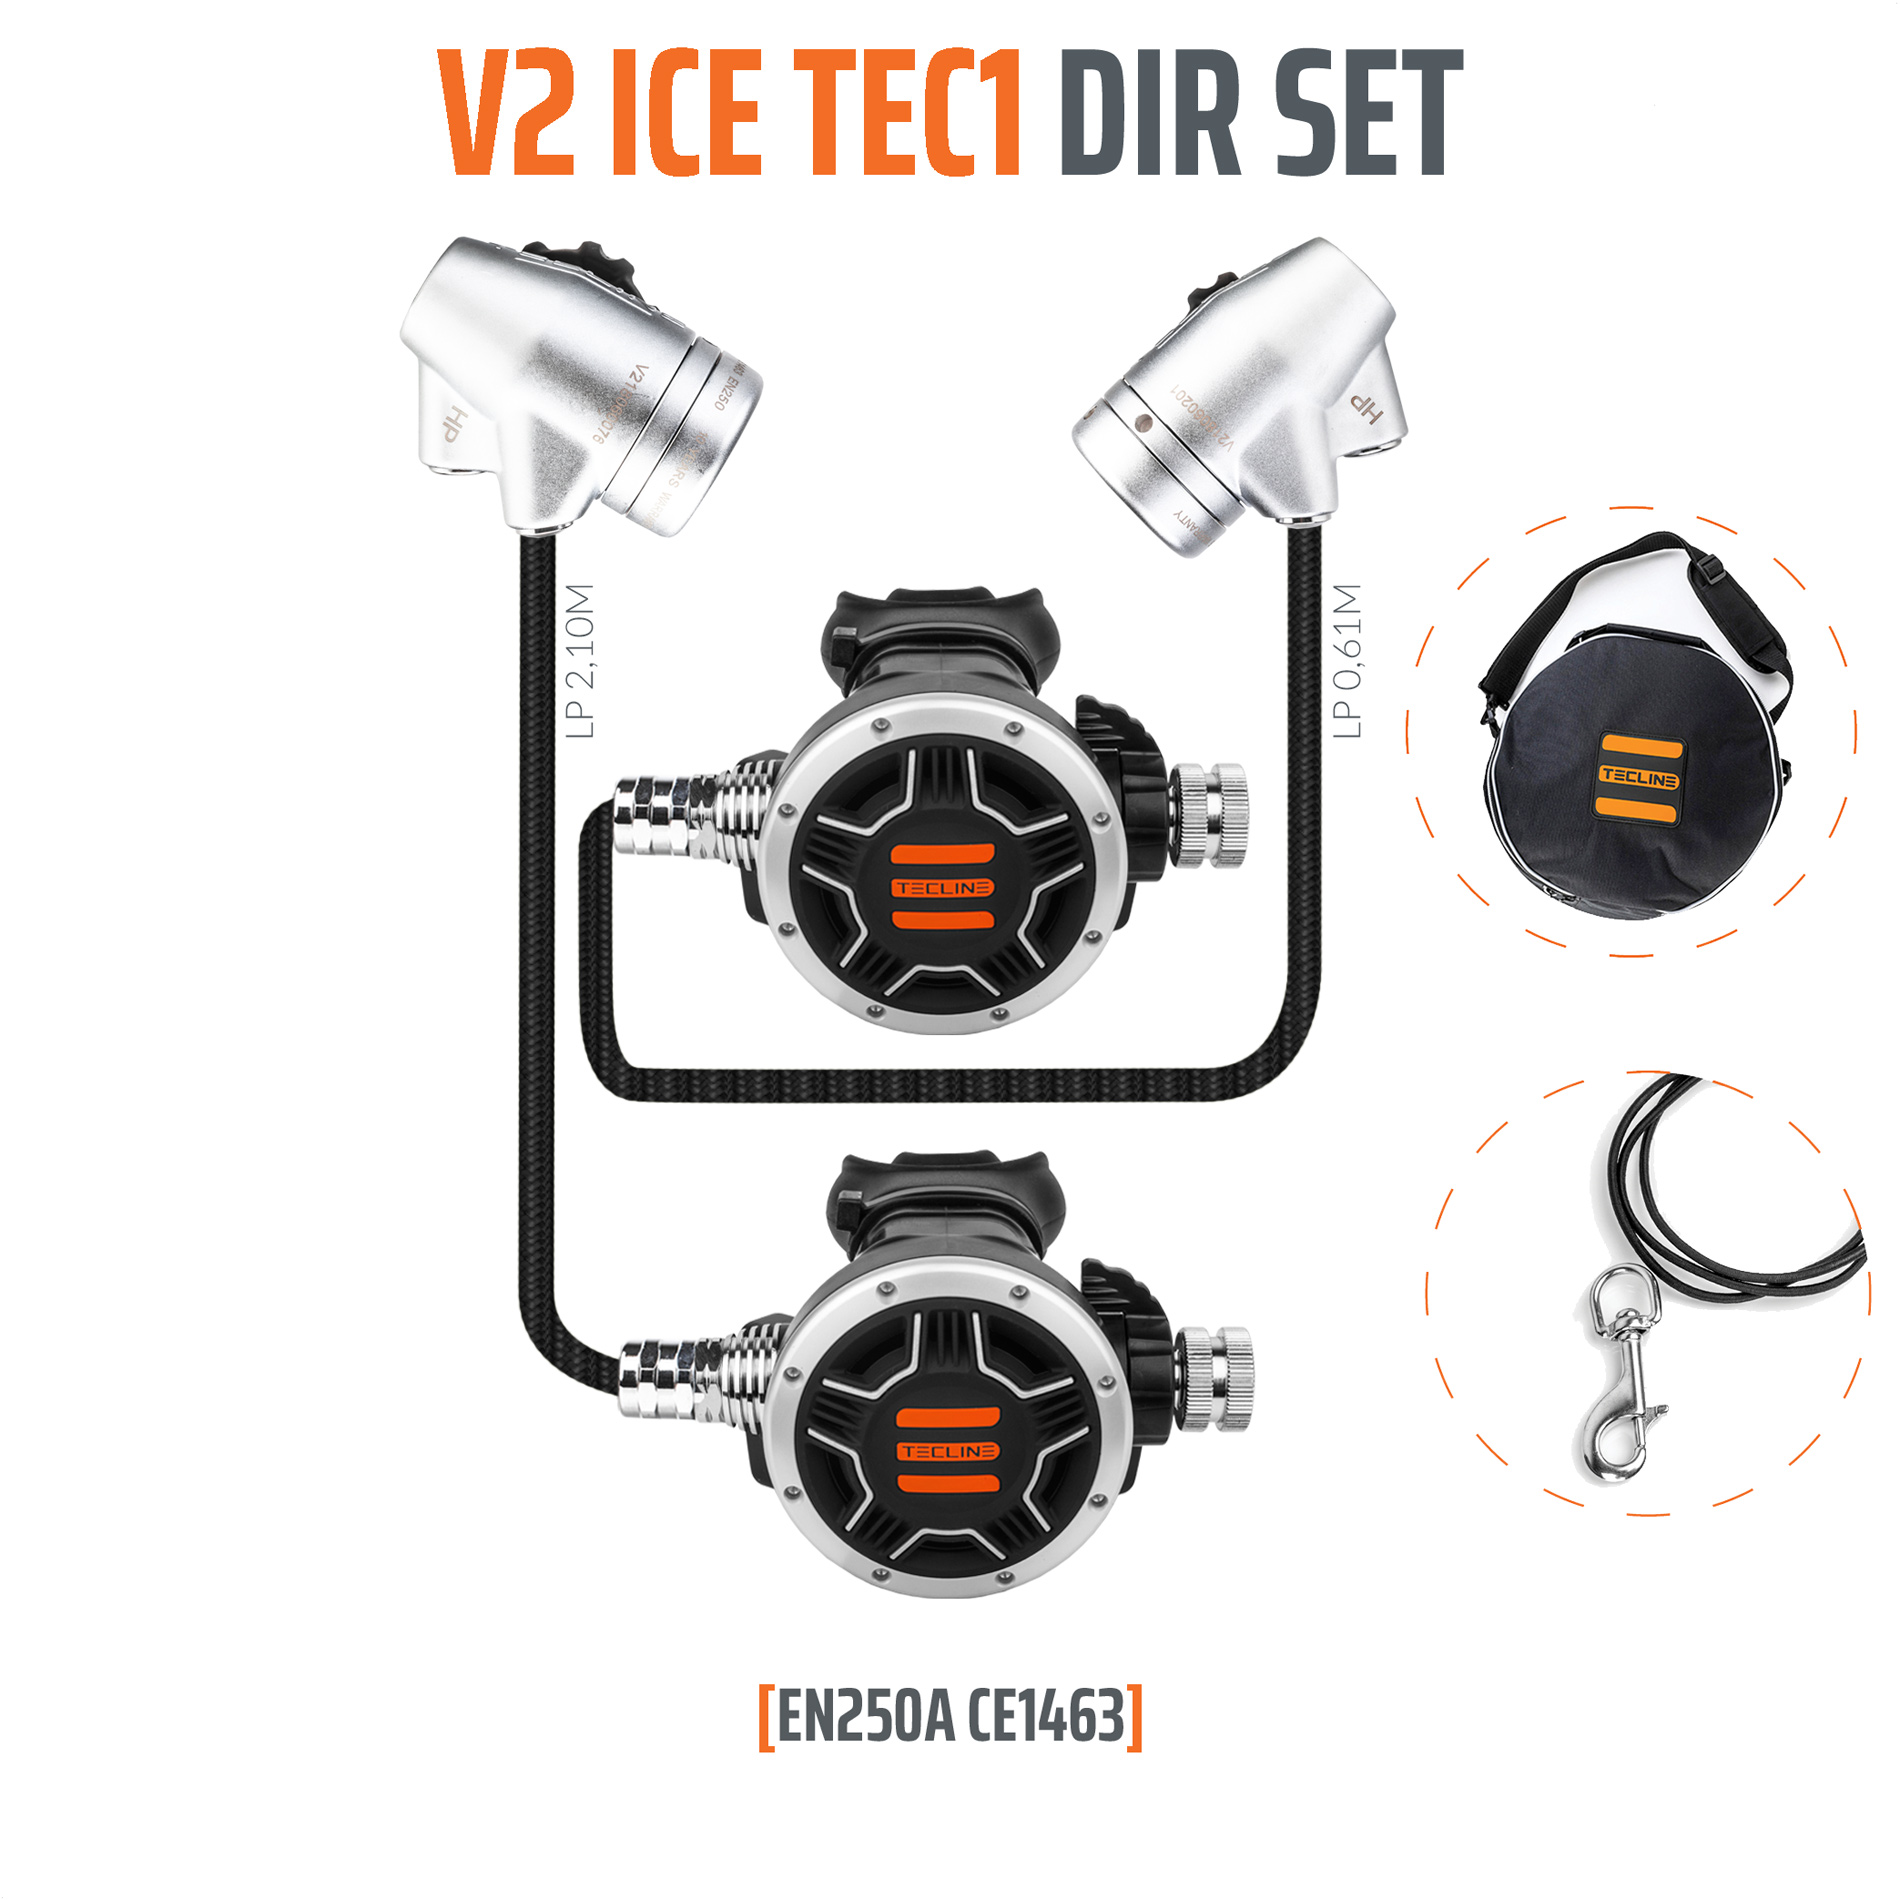 Tecline Regulator V2 ICE TEC1 DIR Set – EN250A